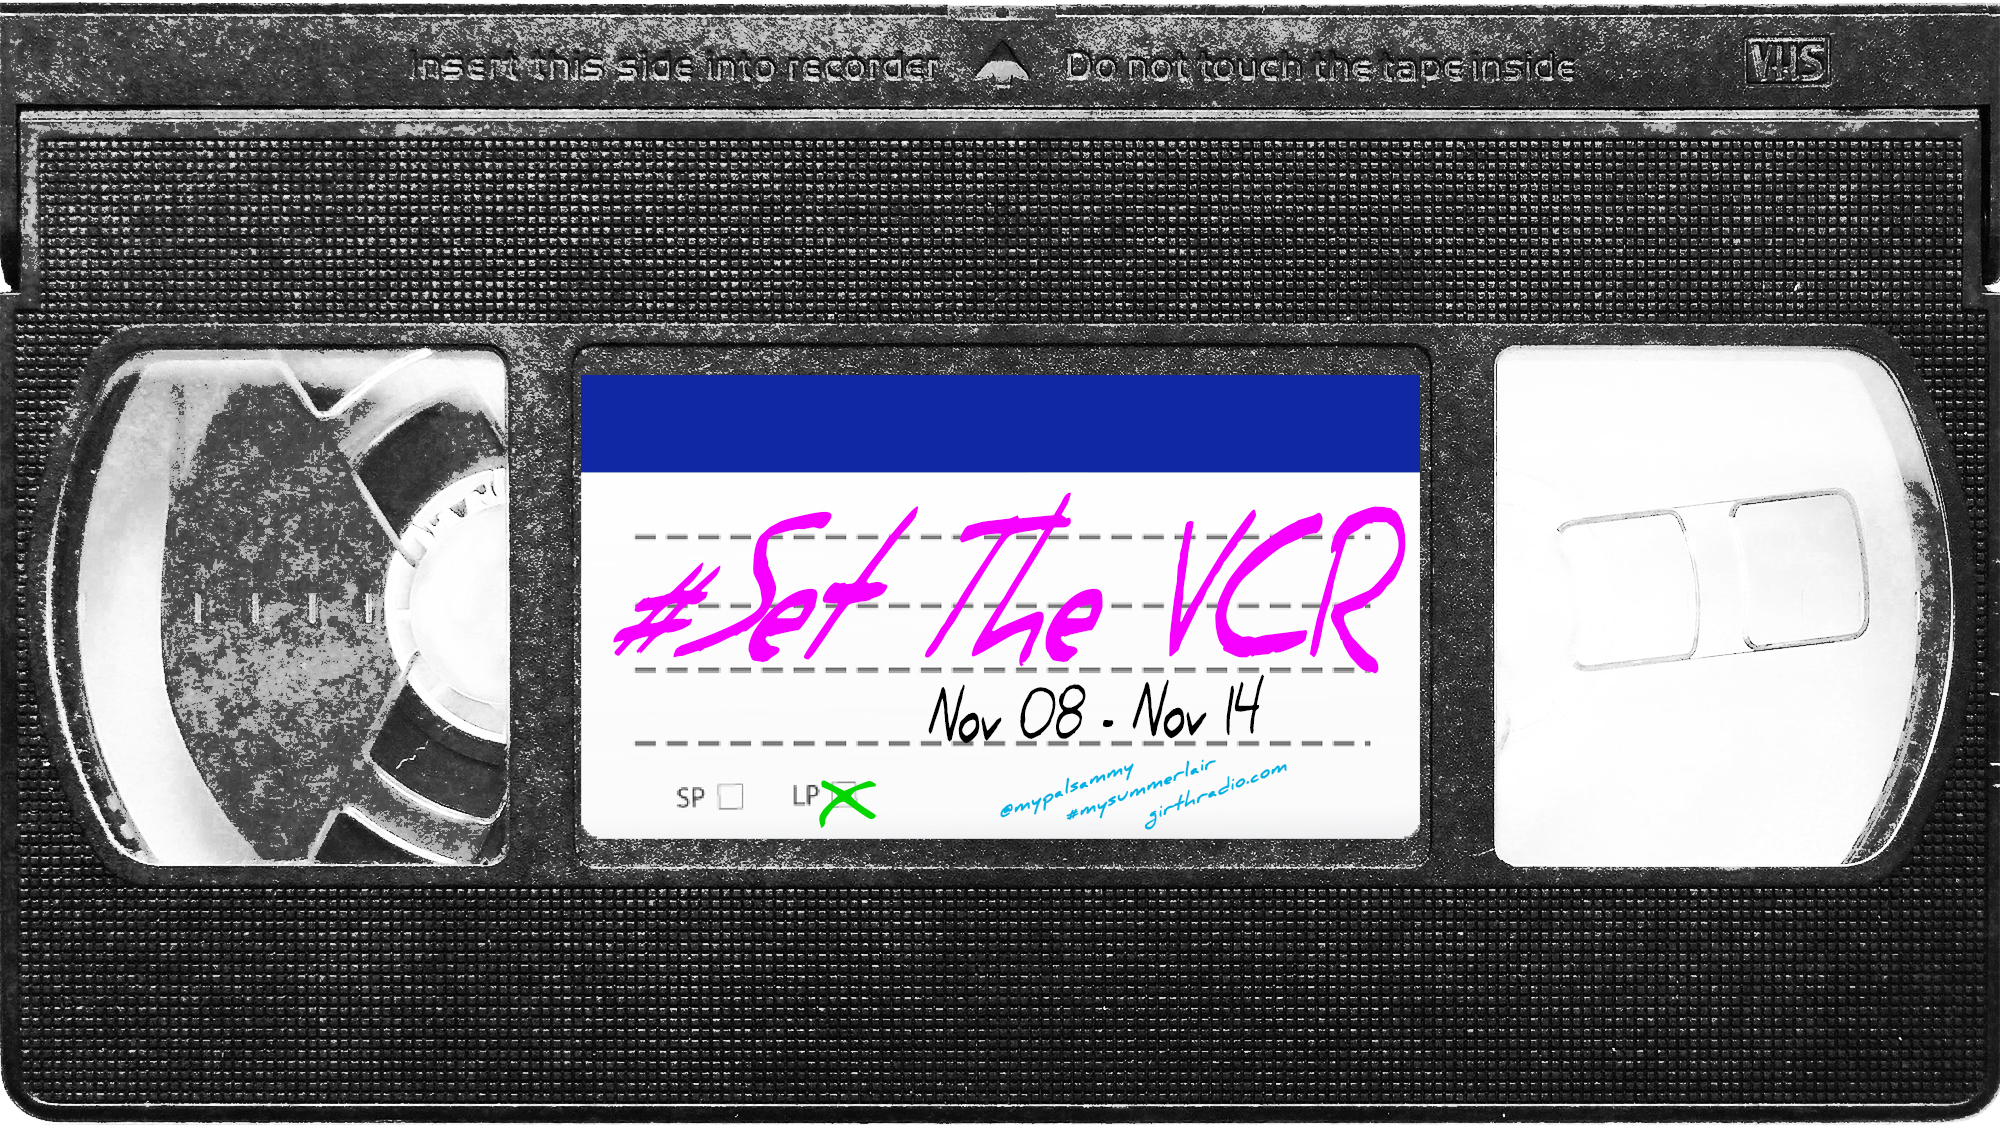 #SetTheVCR: November 8-14, 2020